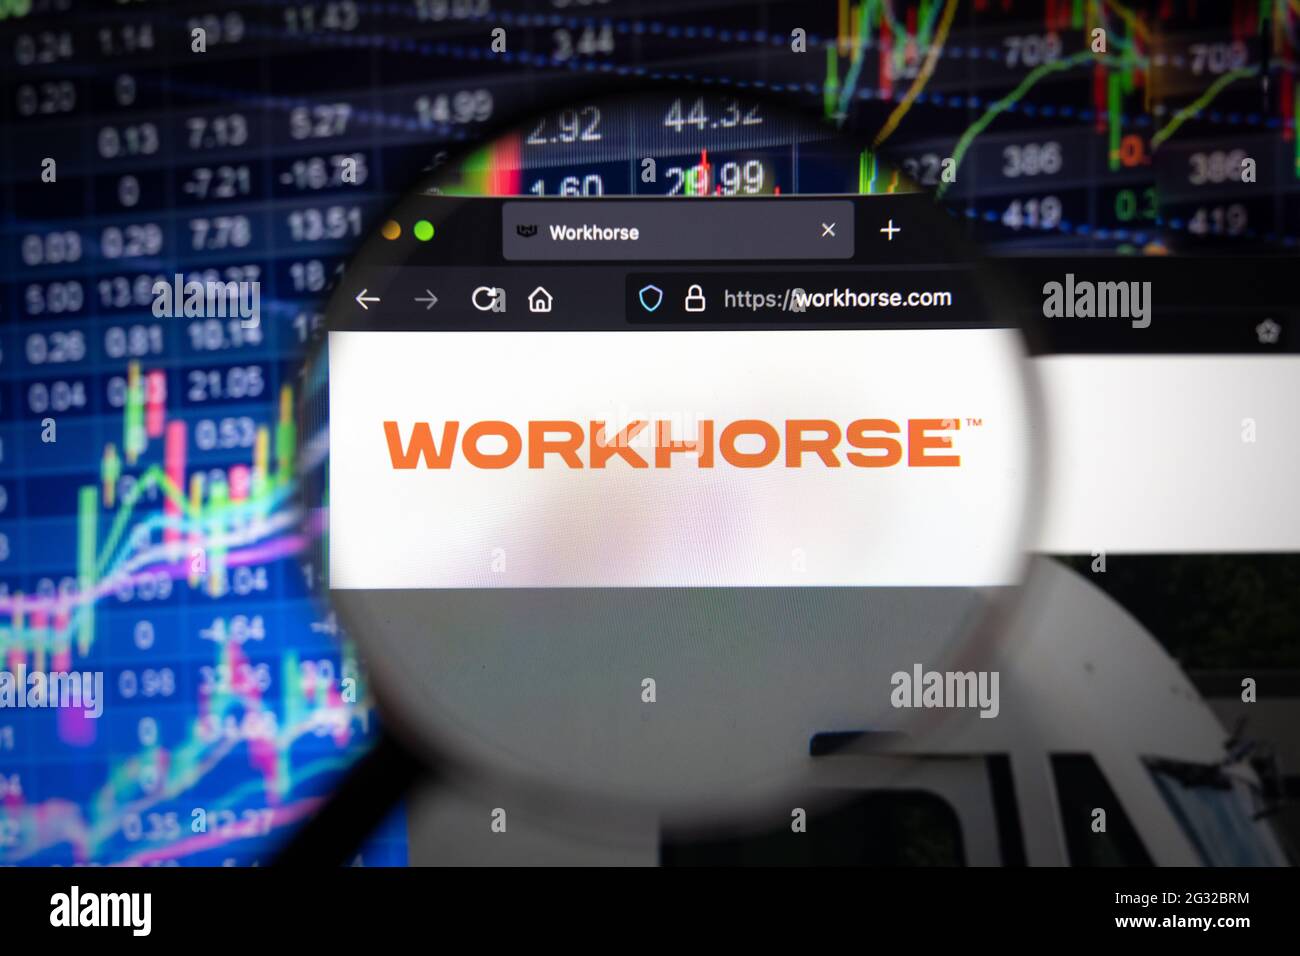 Logo de la société Workhorse sur un site Web avec des développements flous de marché boursier en arrière-plan, vu sur un écran d'ordinateur à travers une loupe Banque D'Images